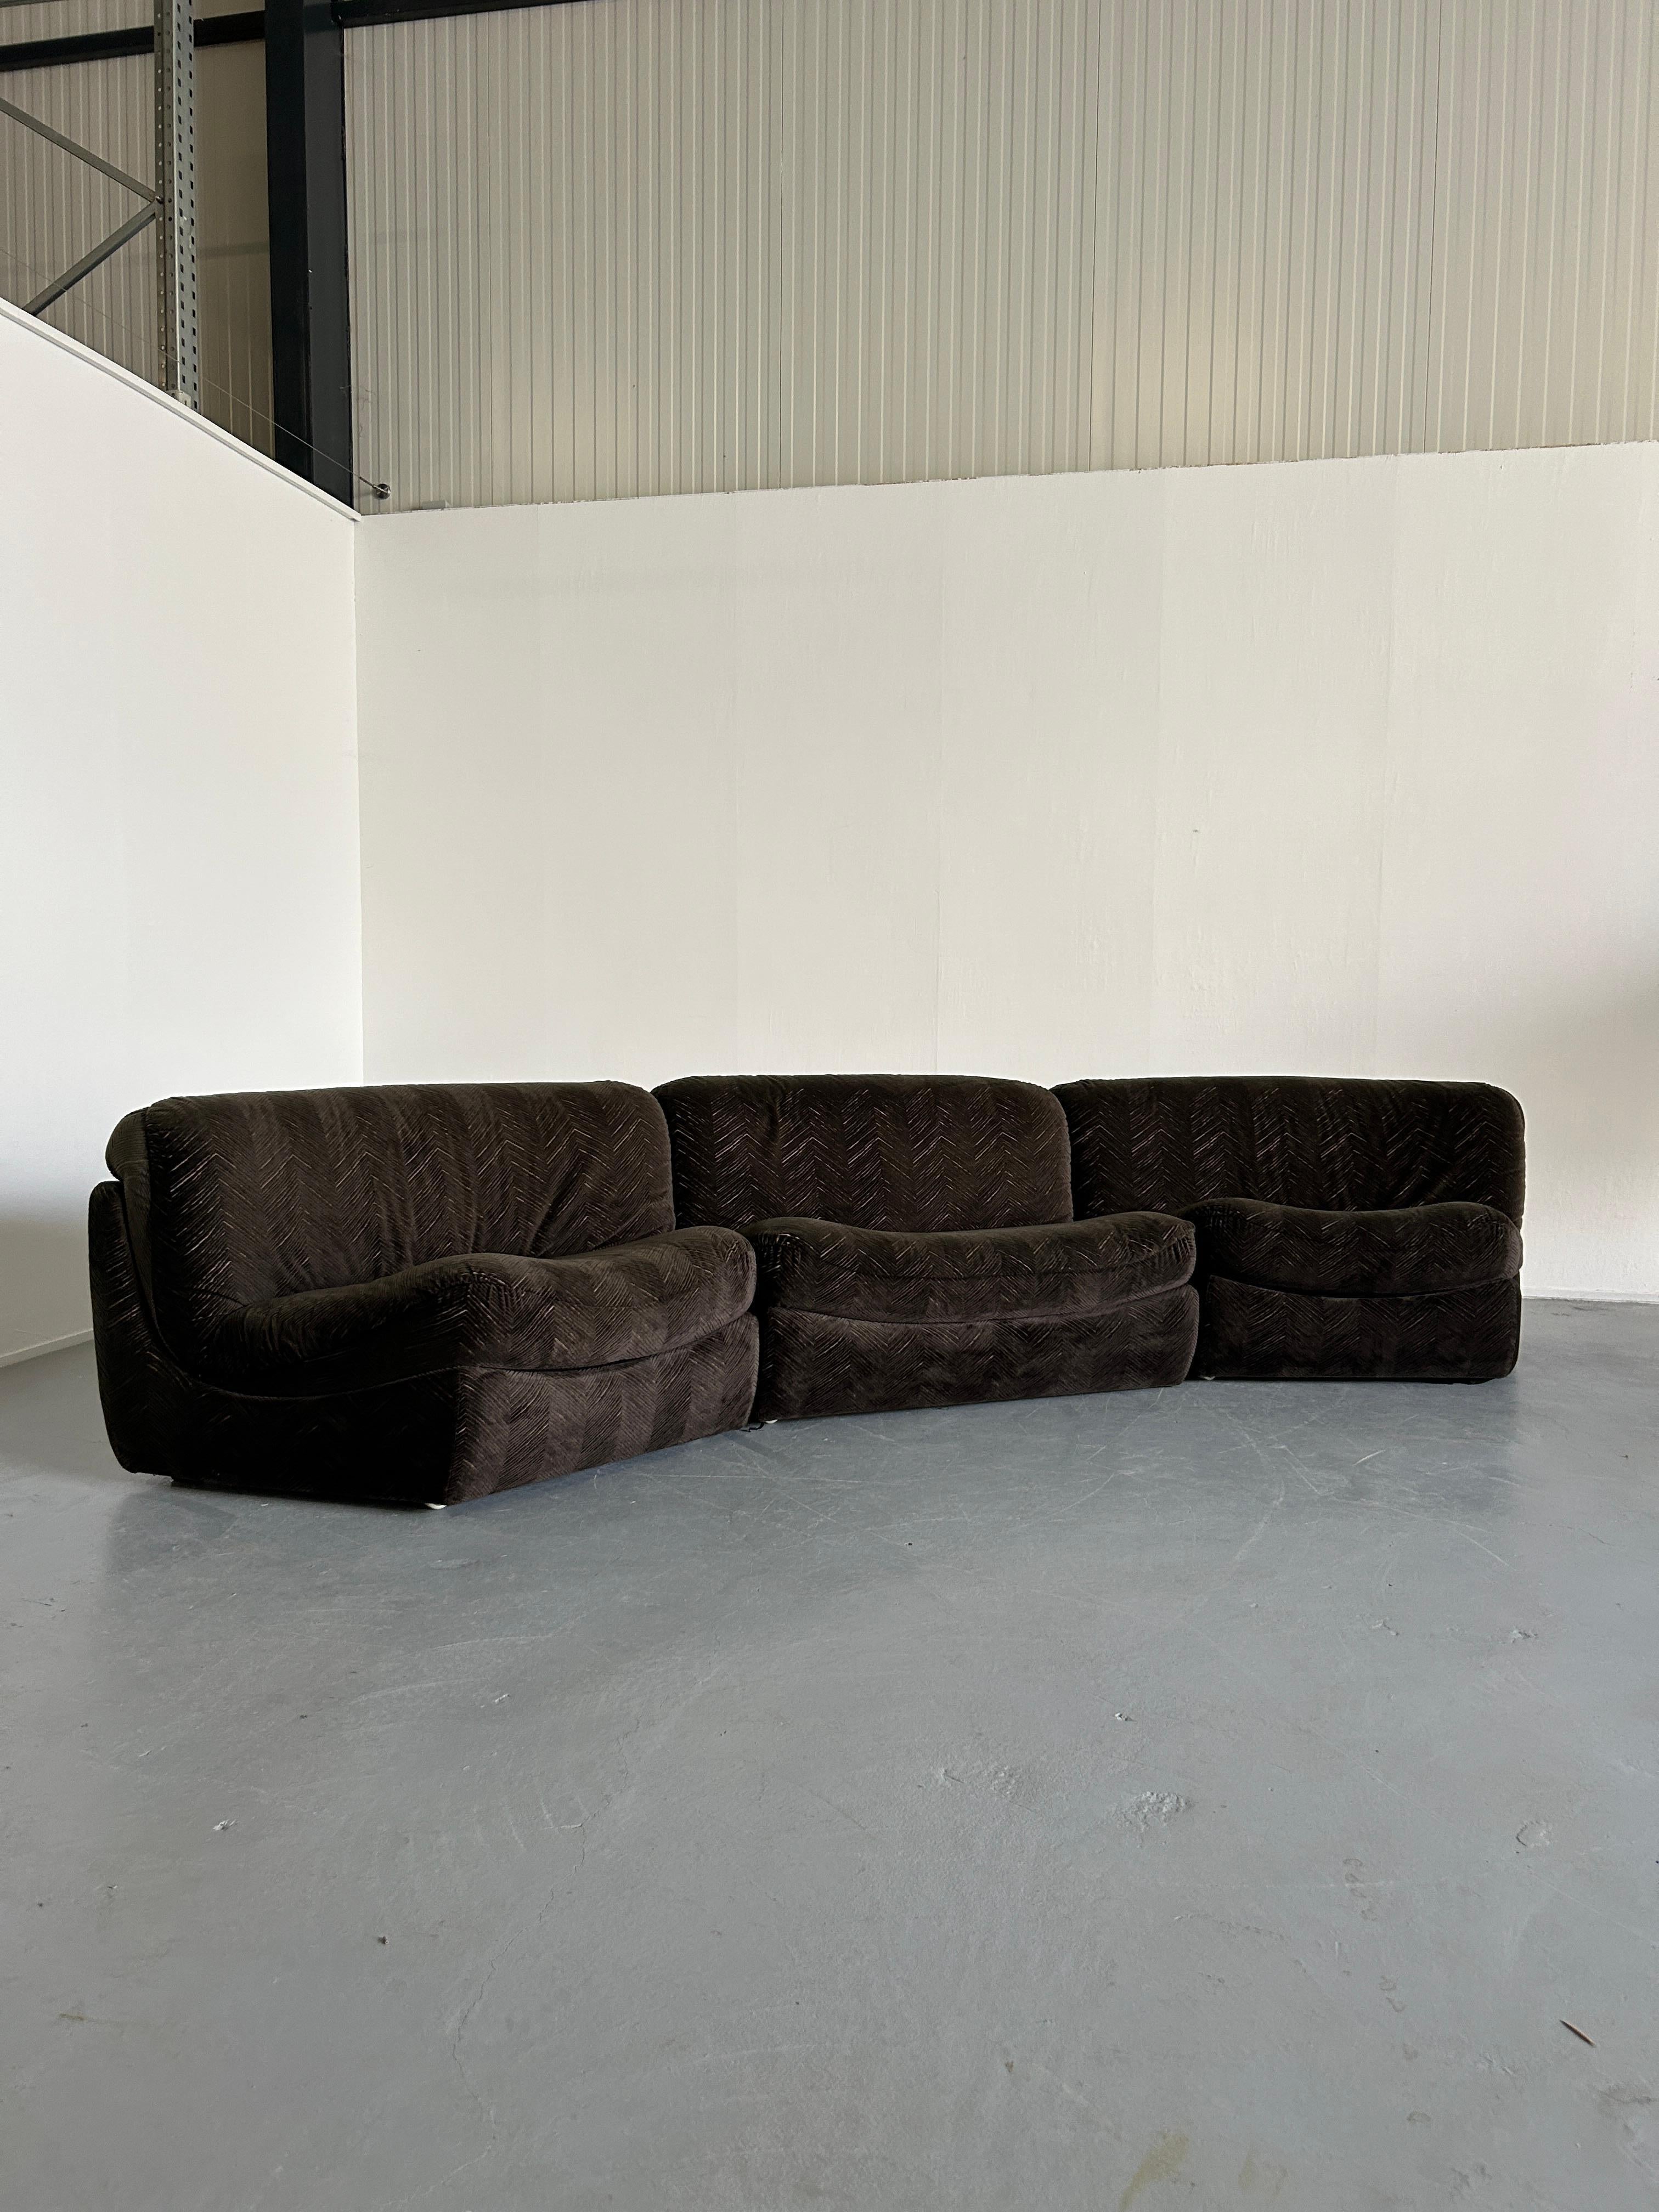 Ein schönes, dreiteiliges, geschwungenes, modulares Mid-Century-Modern-Sofa im Stil von Vladimir Kagan oder Milo Baughman.
Eine Vintage-Produktion, die dem österreichischen Edelhersteller Wittmann zugeschrieben wird - wie der ursprüngliche Besitzer,